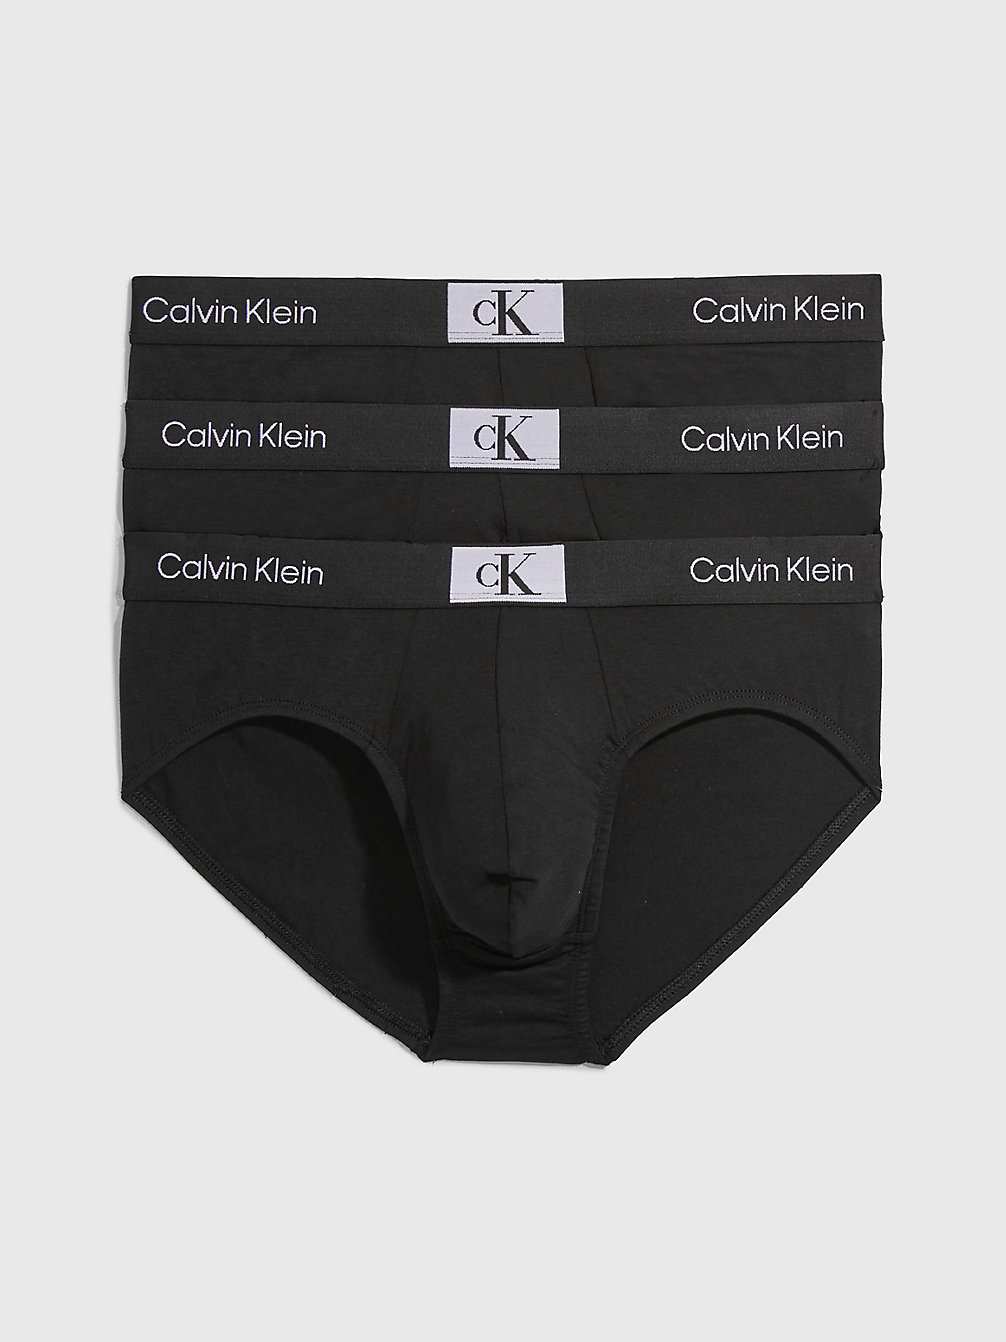 BLACK/ BLACK/ BLACK 3er-Pack Slips - Ck96 undefined Herren Calvin Klein